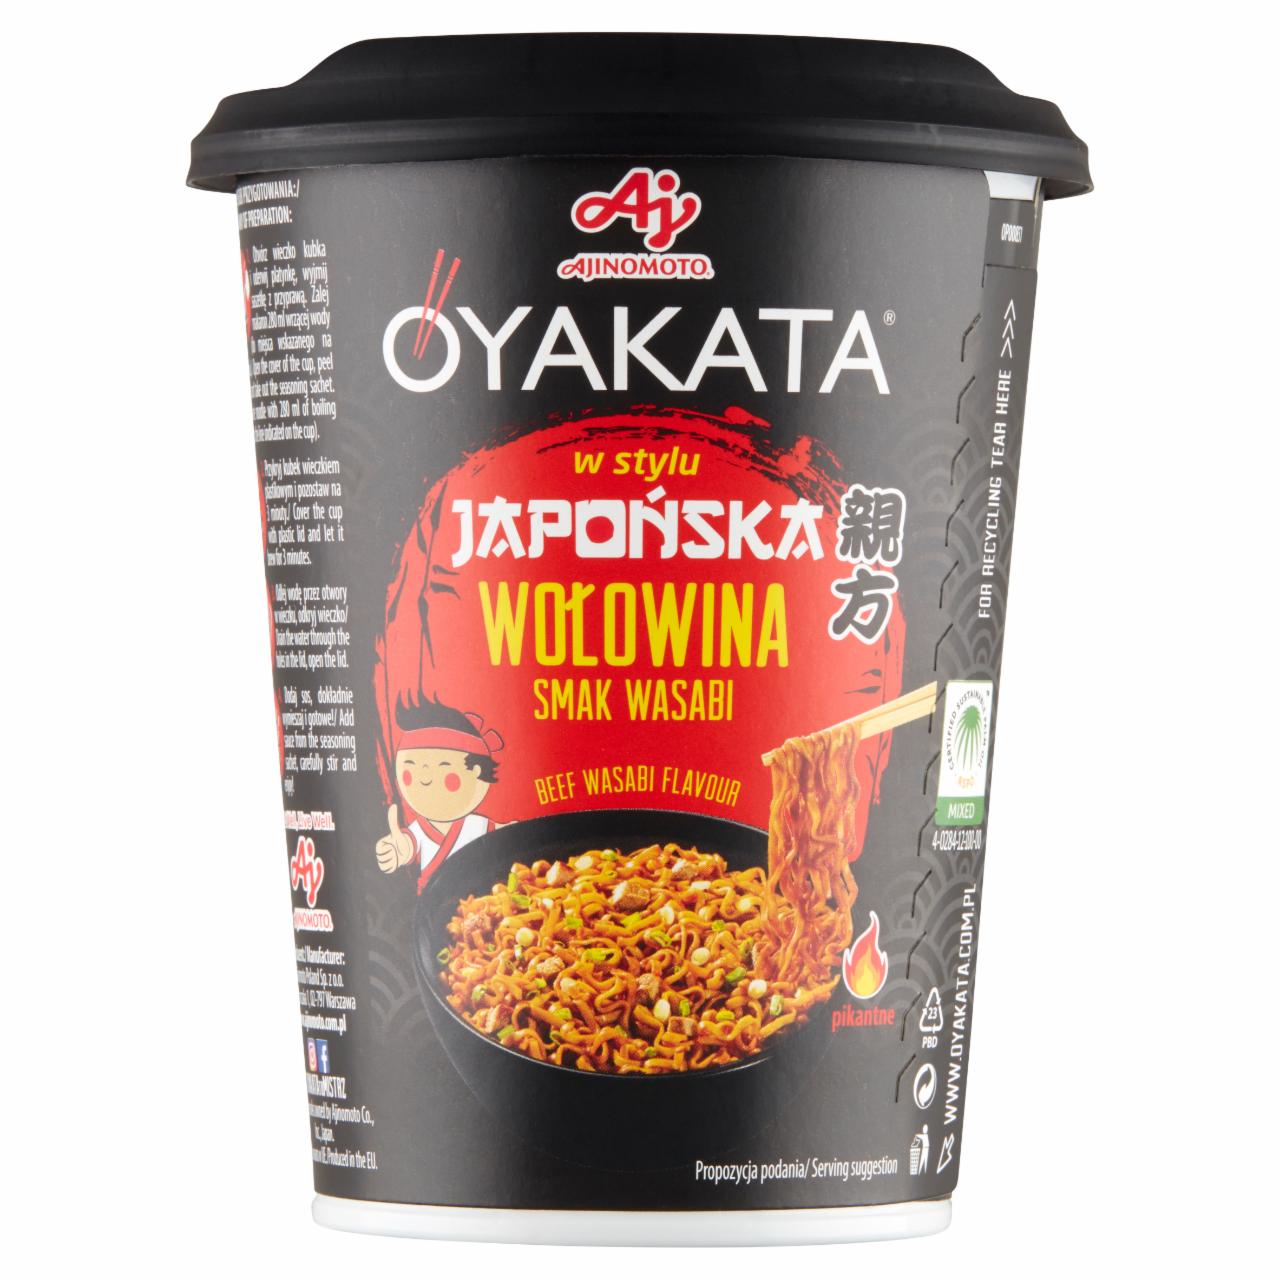 Zdjęcia - Danie instant z sosem w stylu japońska wołowina smak wasabi Oyakata